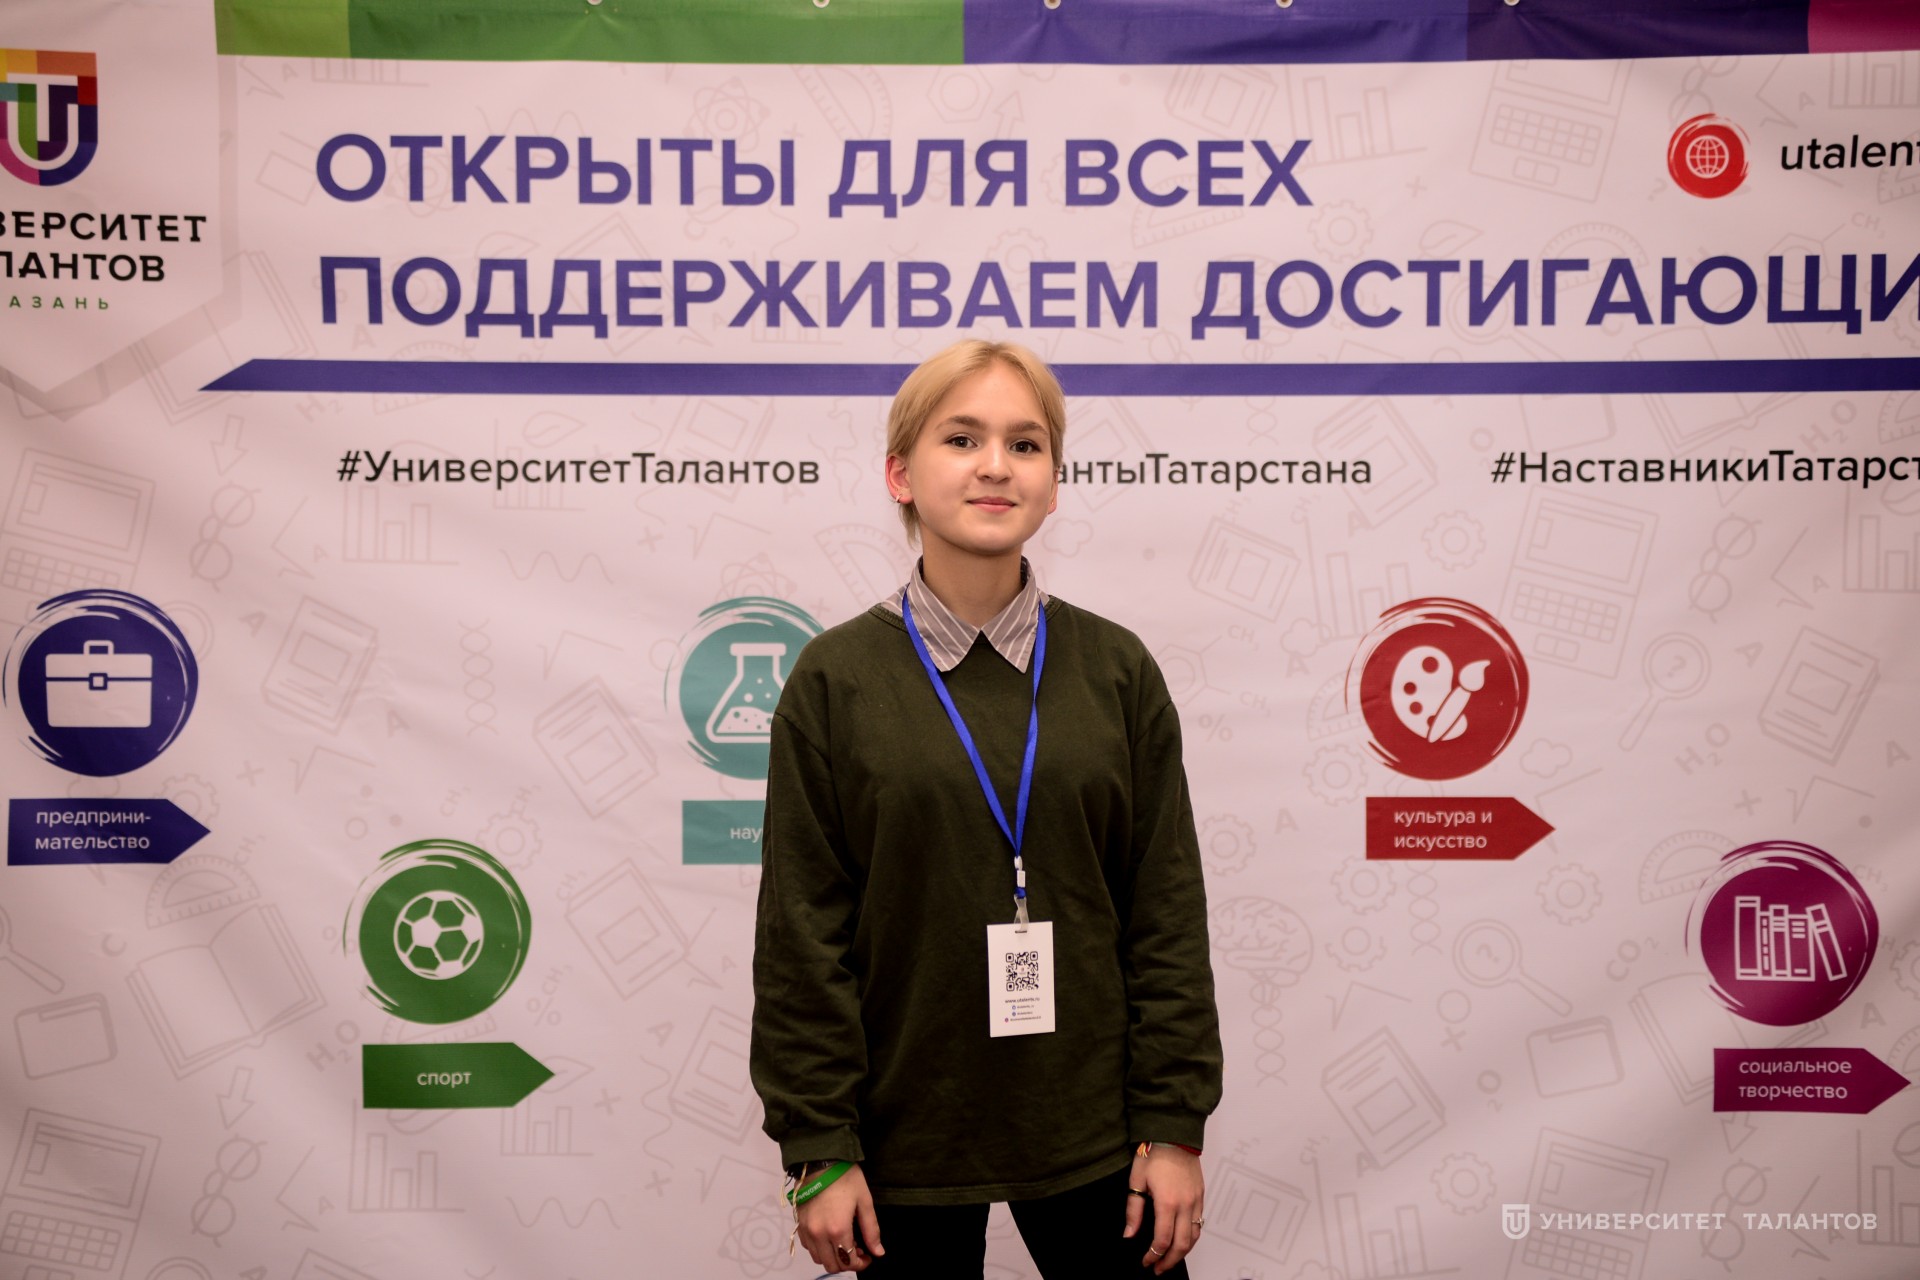 Алия Гулова: «У молодежи сейчас столько возможностей – нужно только пользоваться ими и развиваться в разных направлениях!»